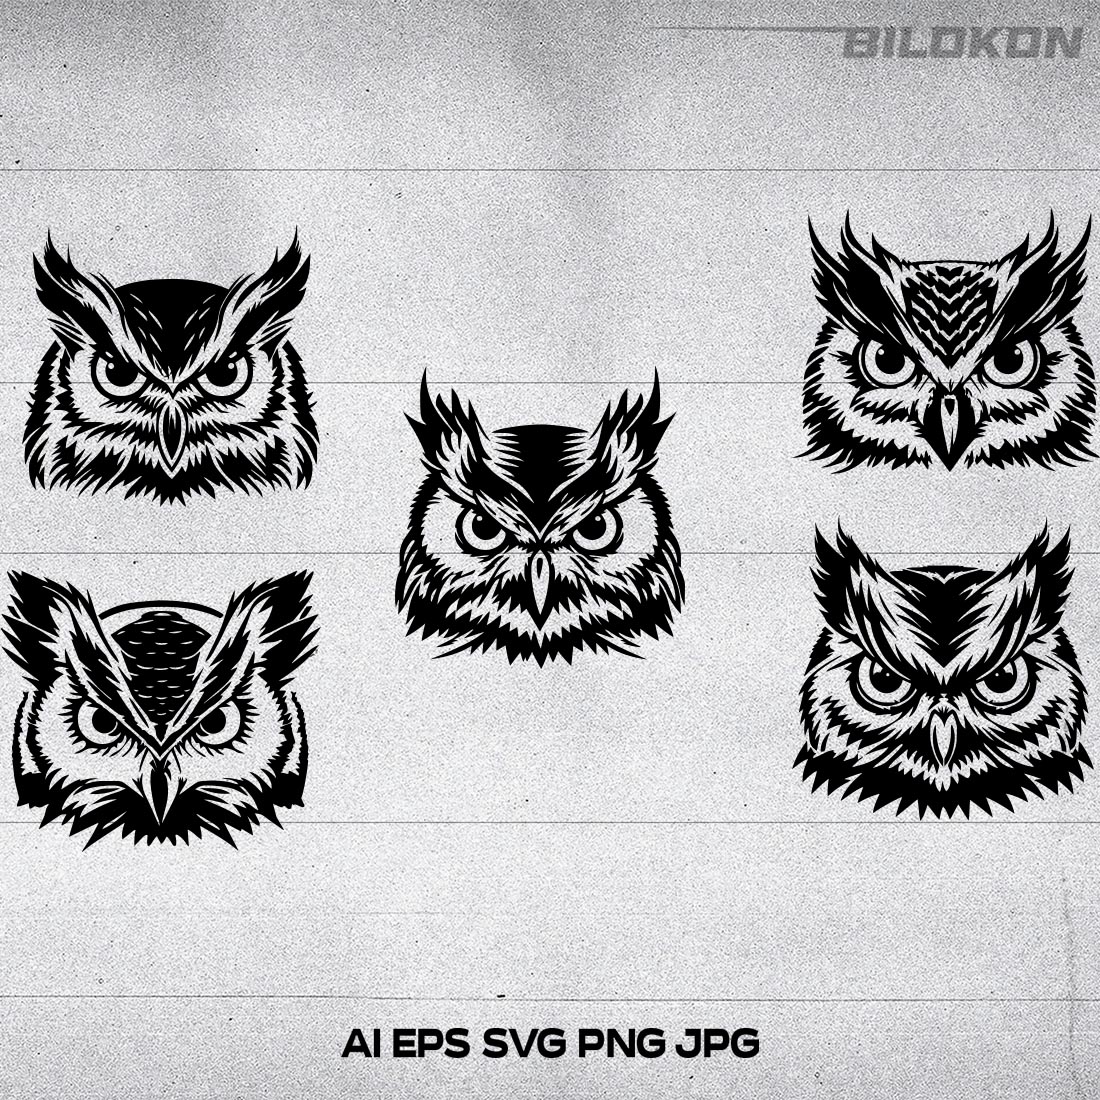 Owl head Vector illustration, SVG BUNDLE cover image.